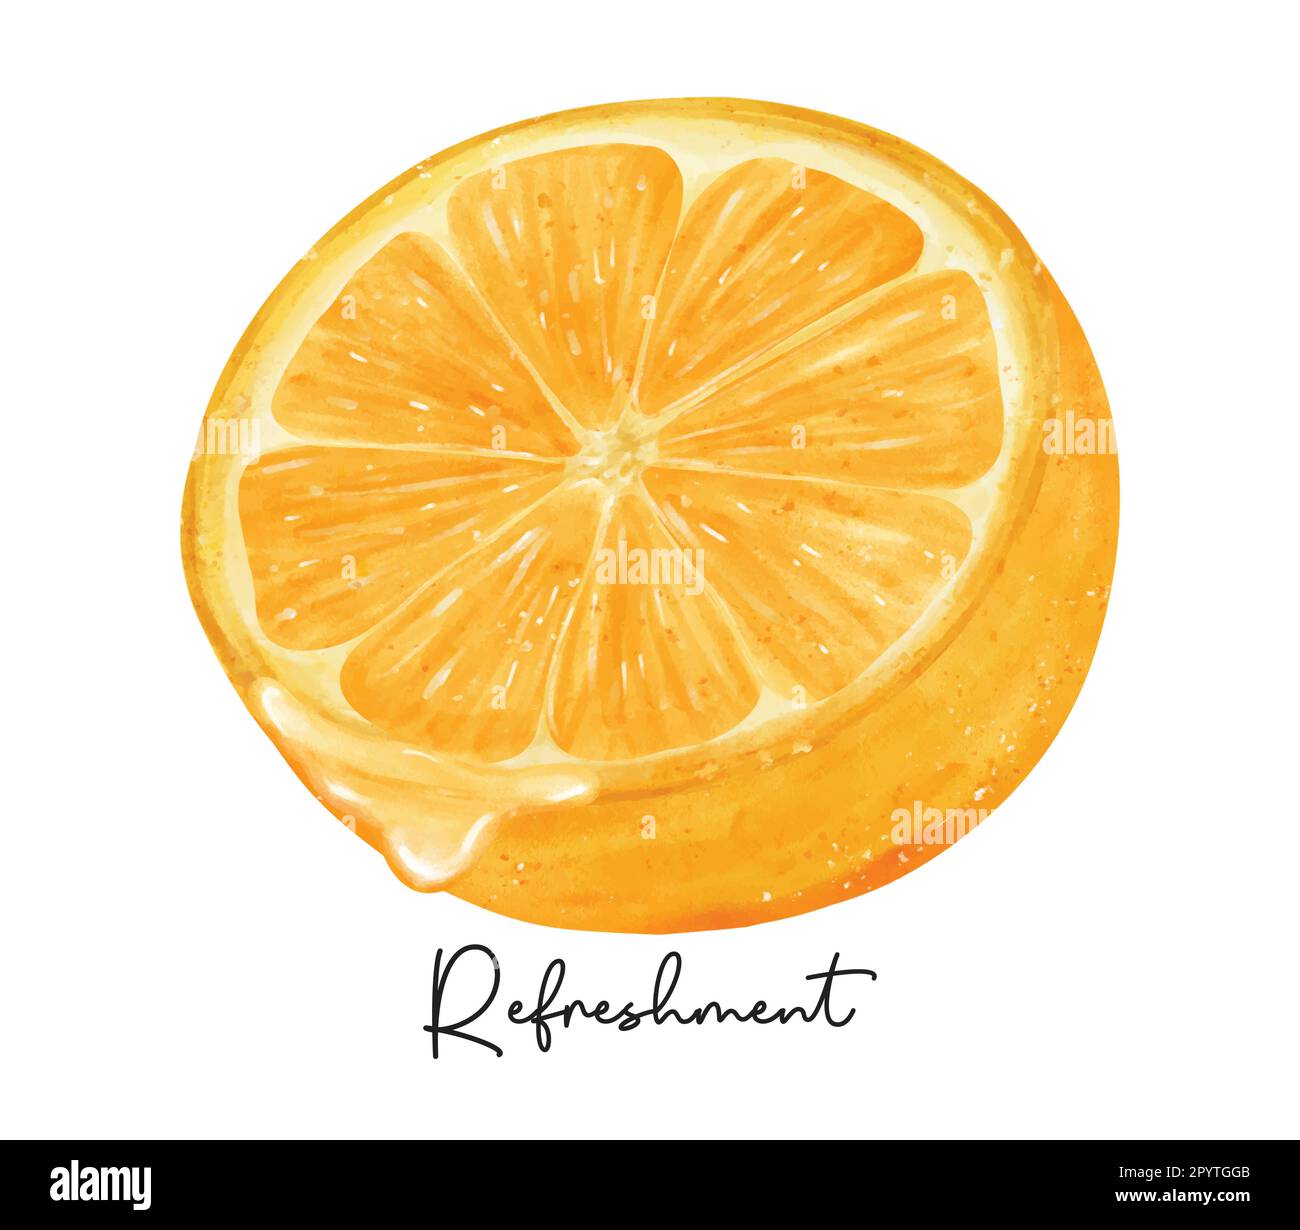 Rinfresco mezzo taglio di frutta arancione con acquerello liquido pittura a mano semirealista vettore di illustrazione isolato su sfondo bianco. Illustrazione Vettoriale